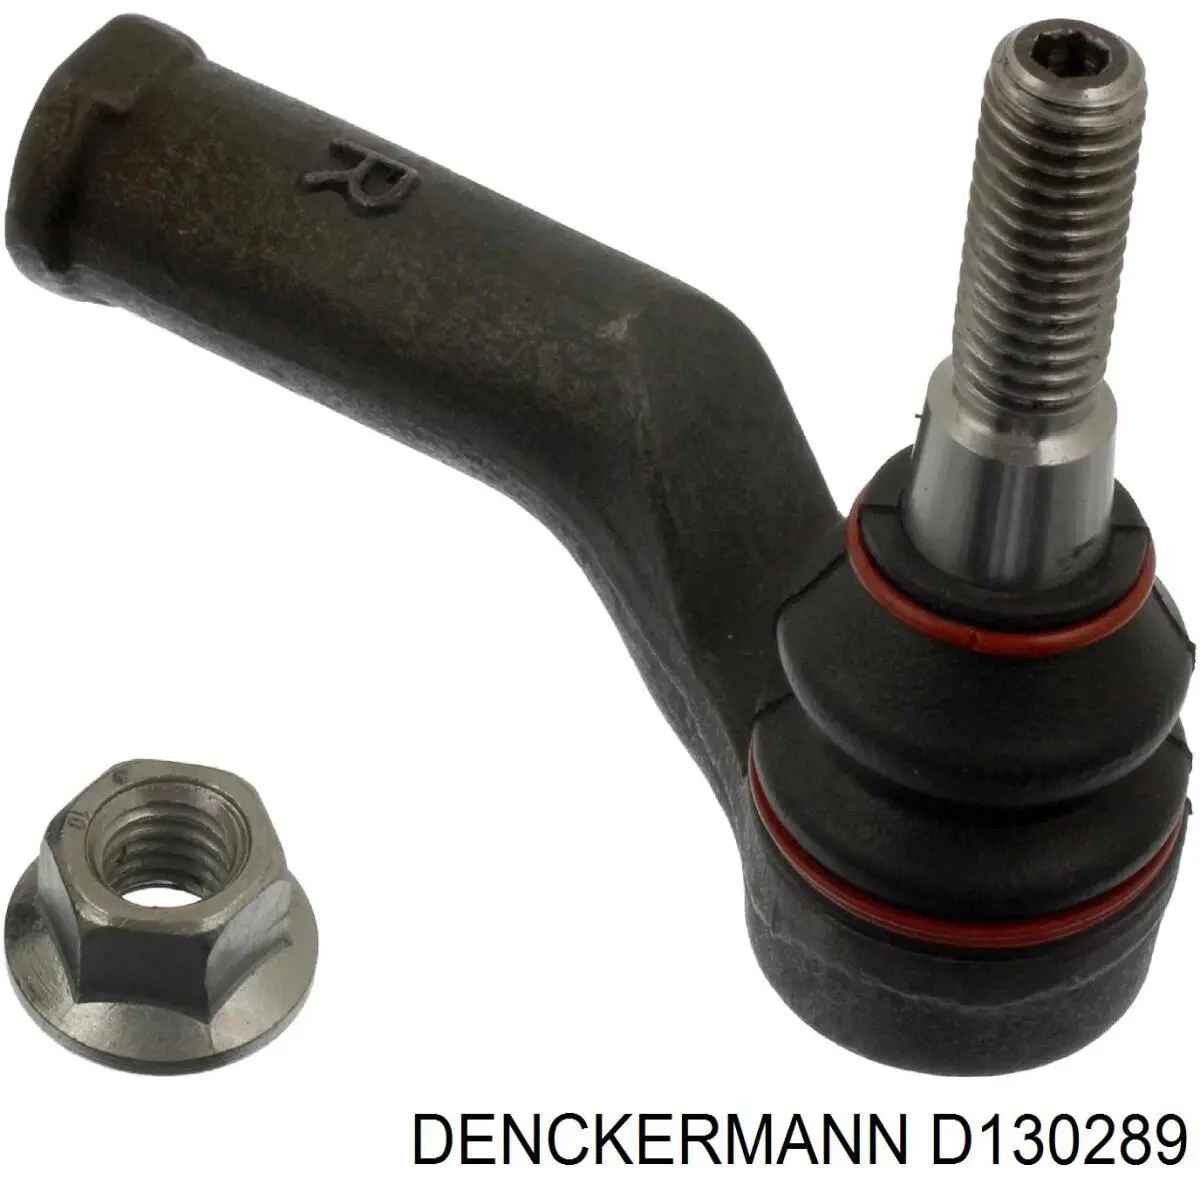 D130289 Denckermann rótula barra de acoplamiento exterior